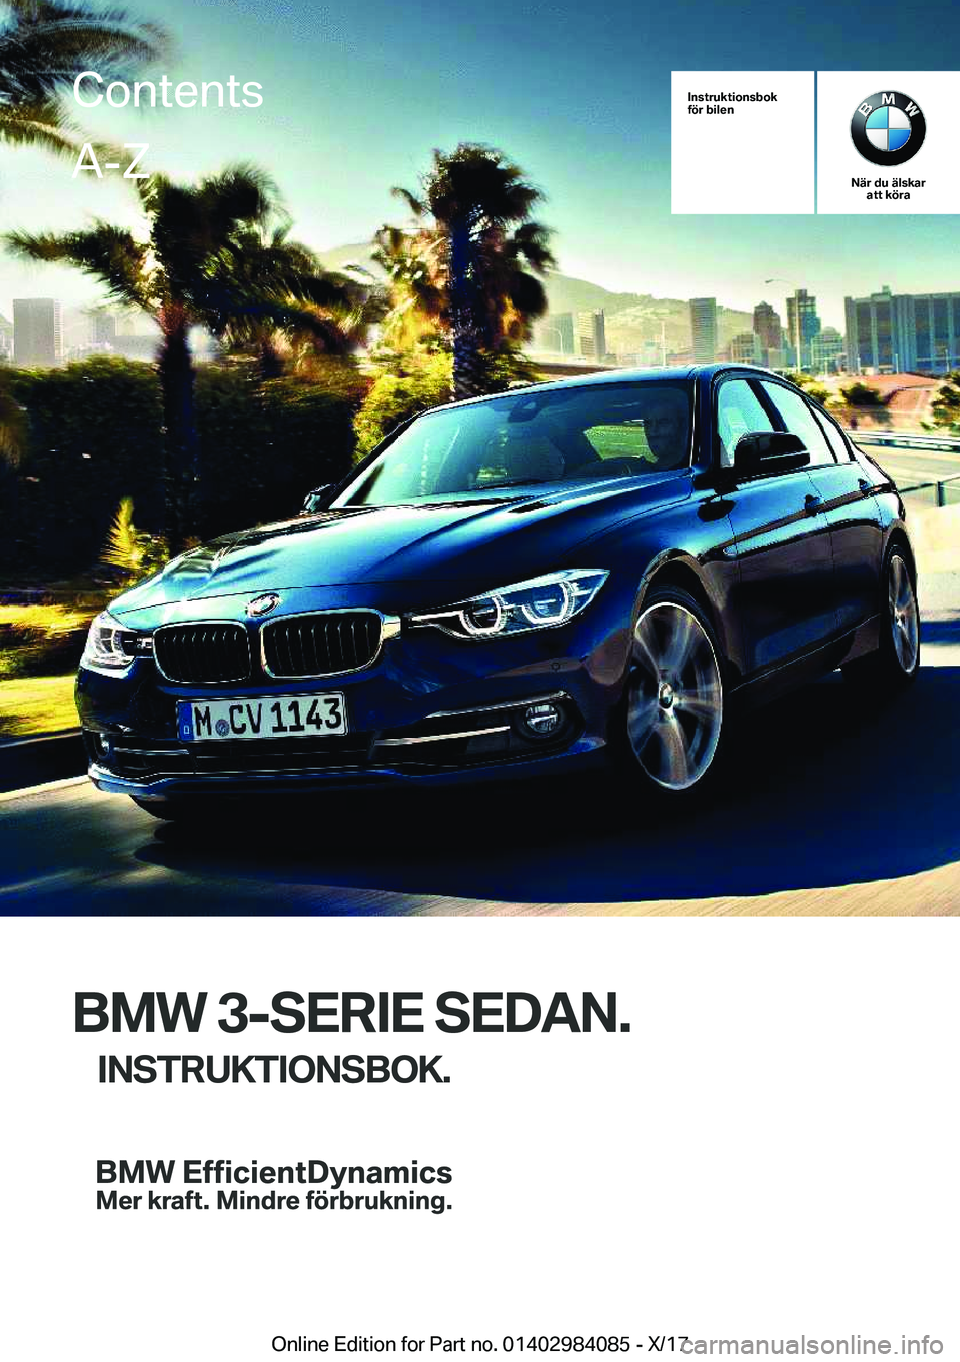 BMW 3 SERIES 2018  InstruktionsbÖcker (in Swedish) �I�n�s�t�r�u�k�t�i�o�n�s�b�o�k
�f�